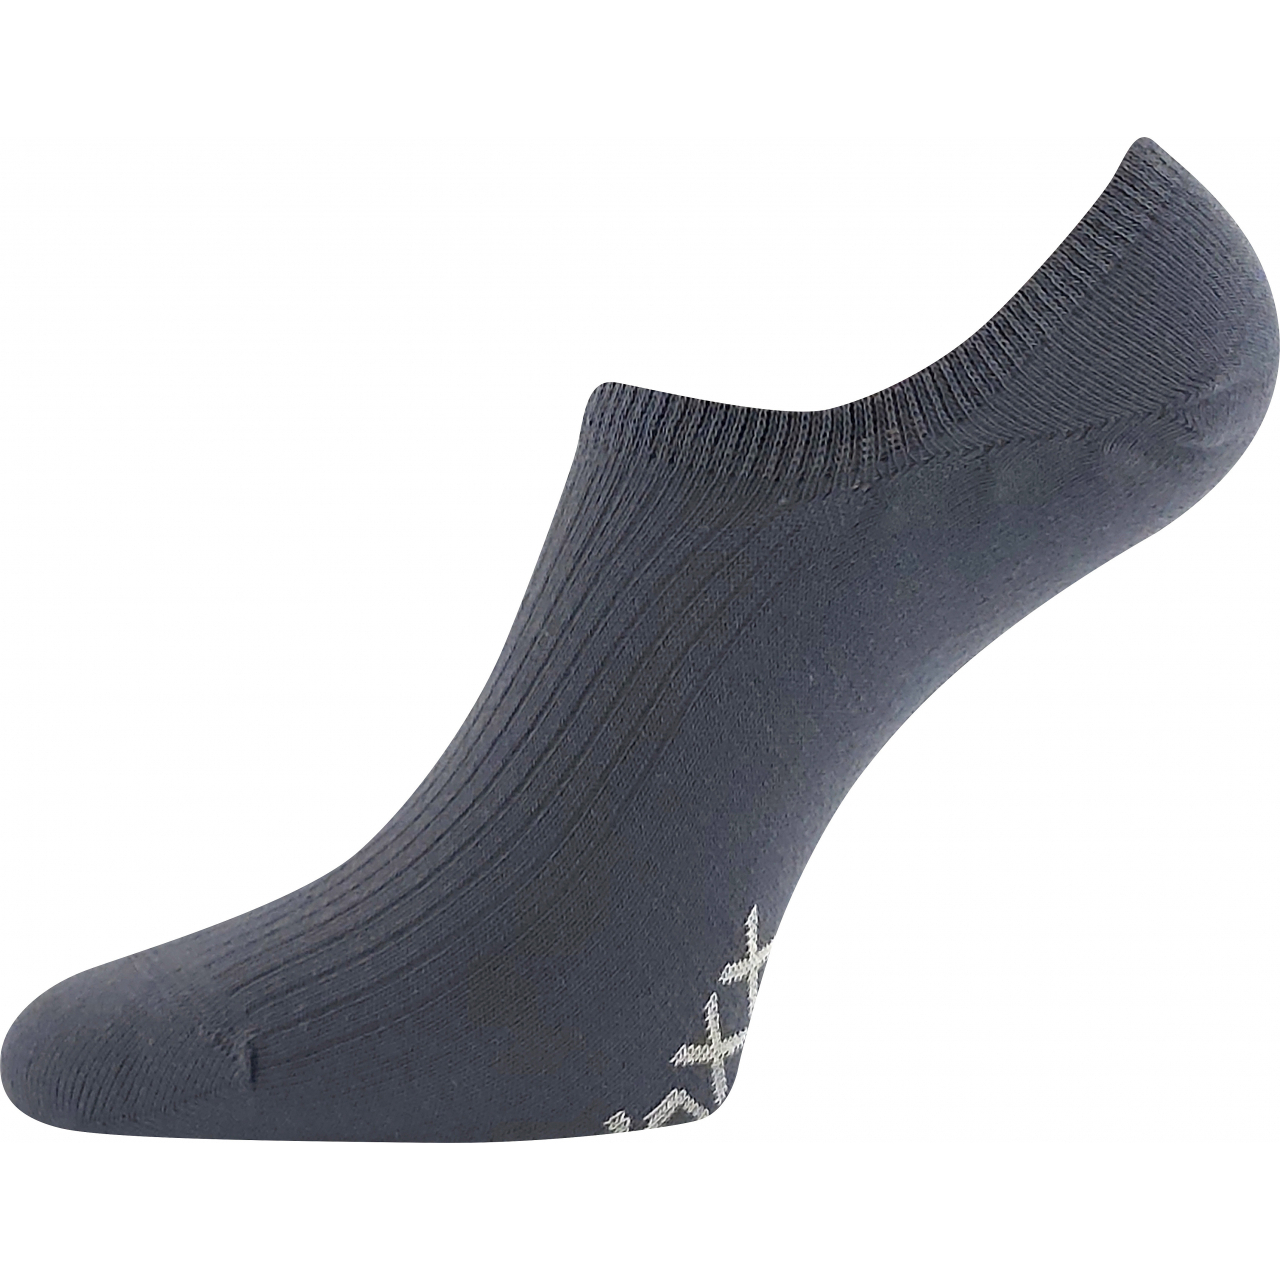 Ponožky unisex krátké Voxx Hagrid - tmavě šedé, 43-46